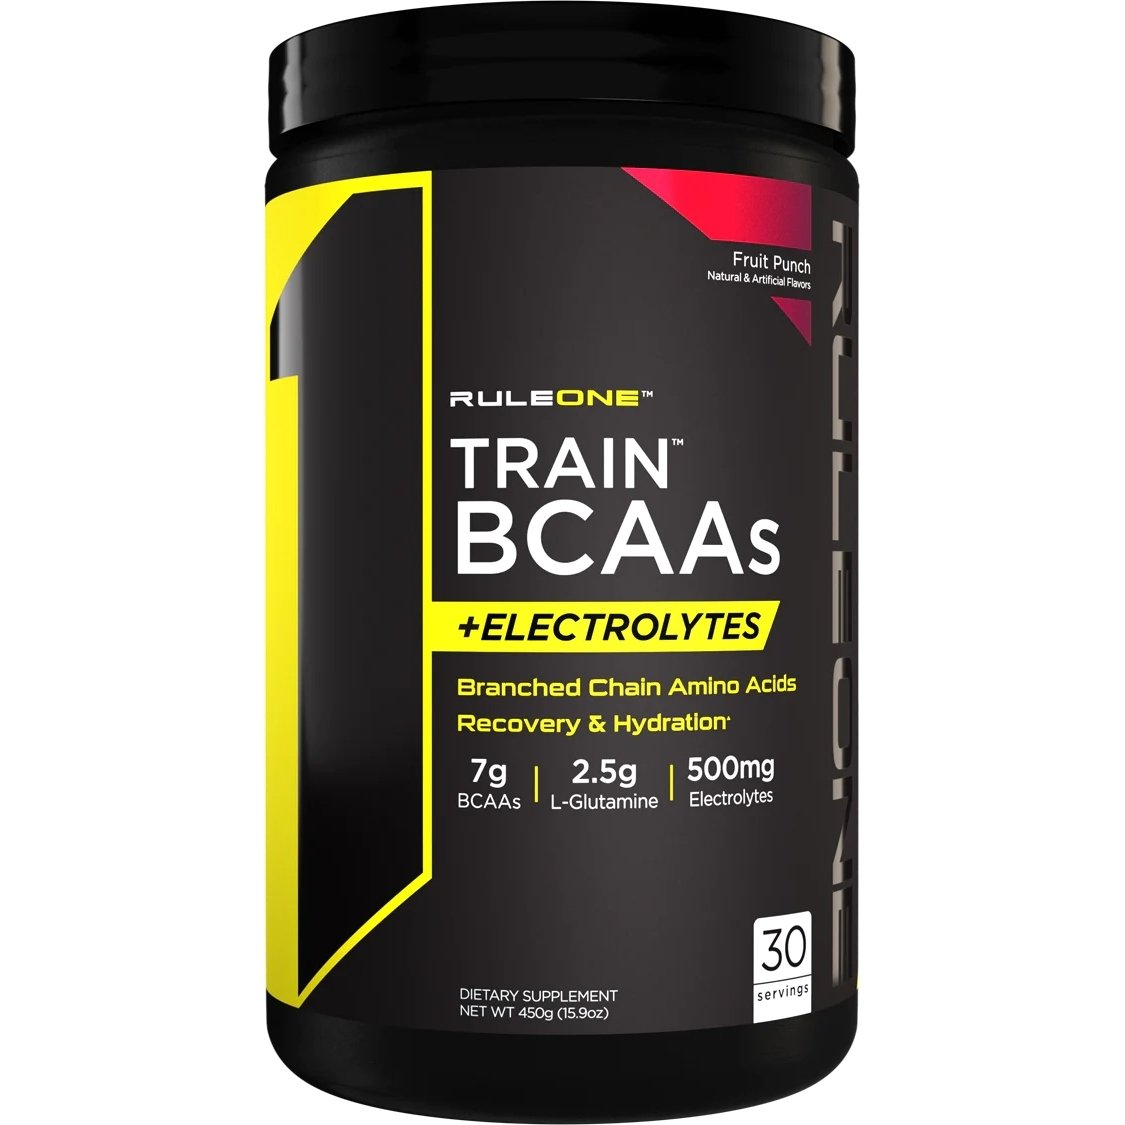 Аминокислота BCAA Rule 1 Train BCAAs + Electrolytes, 450 грамм Фруктовый пунш,  мл, Rule One Proteins. BCAA. Снижение веса Восстановление Антикатаболические свойства Сухая мышечная масса 